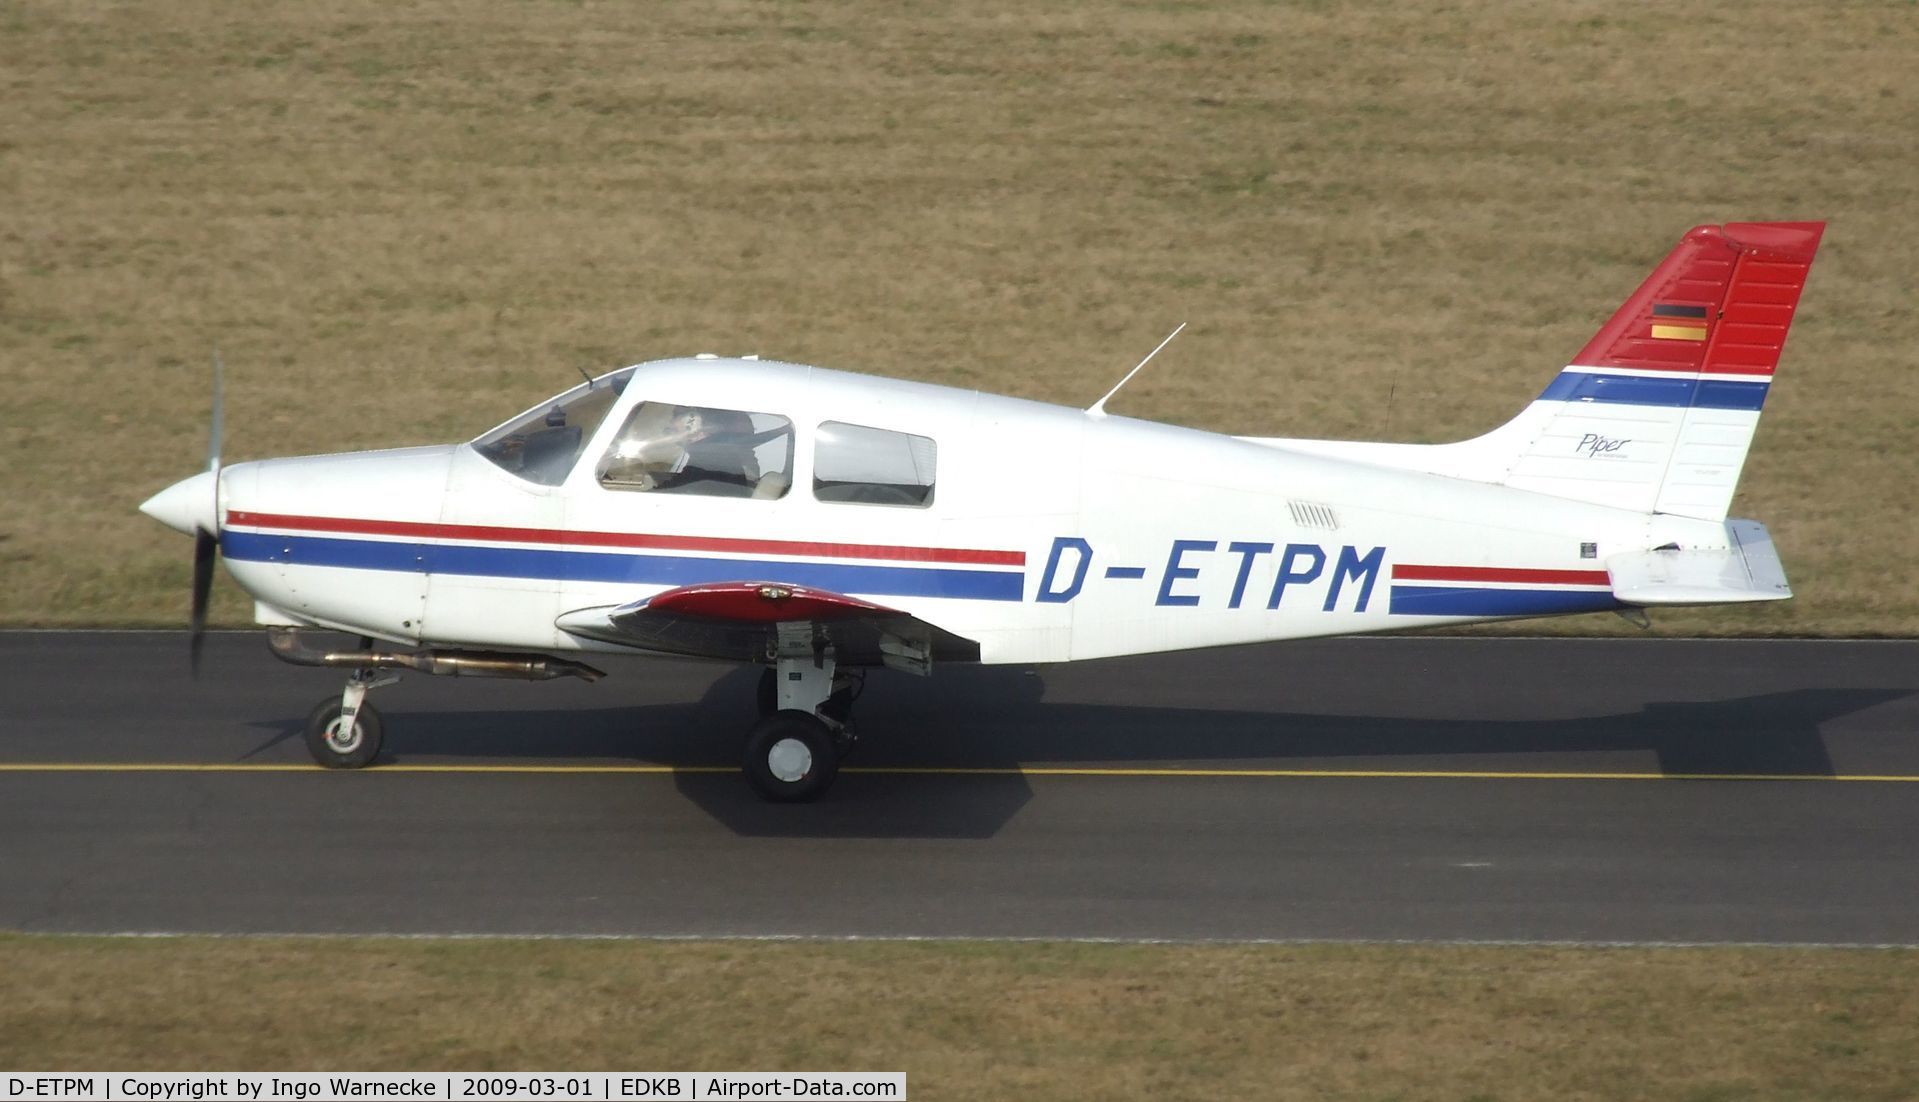 D-ETPM, 1994 Piper PA-28-161 Cadet C/N 2841363, Piper PA-28-161 at Bonn-Hangelar airfield